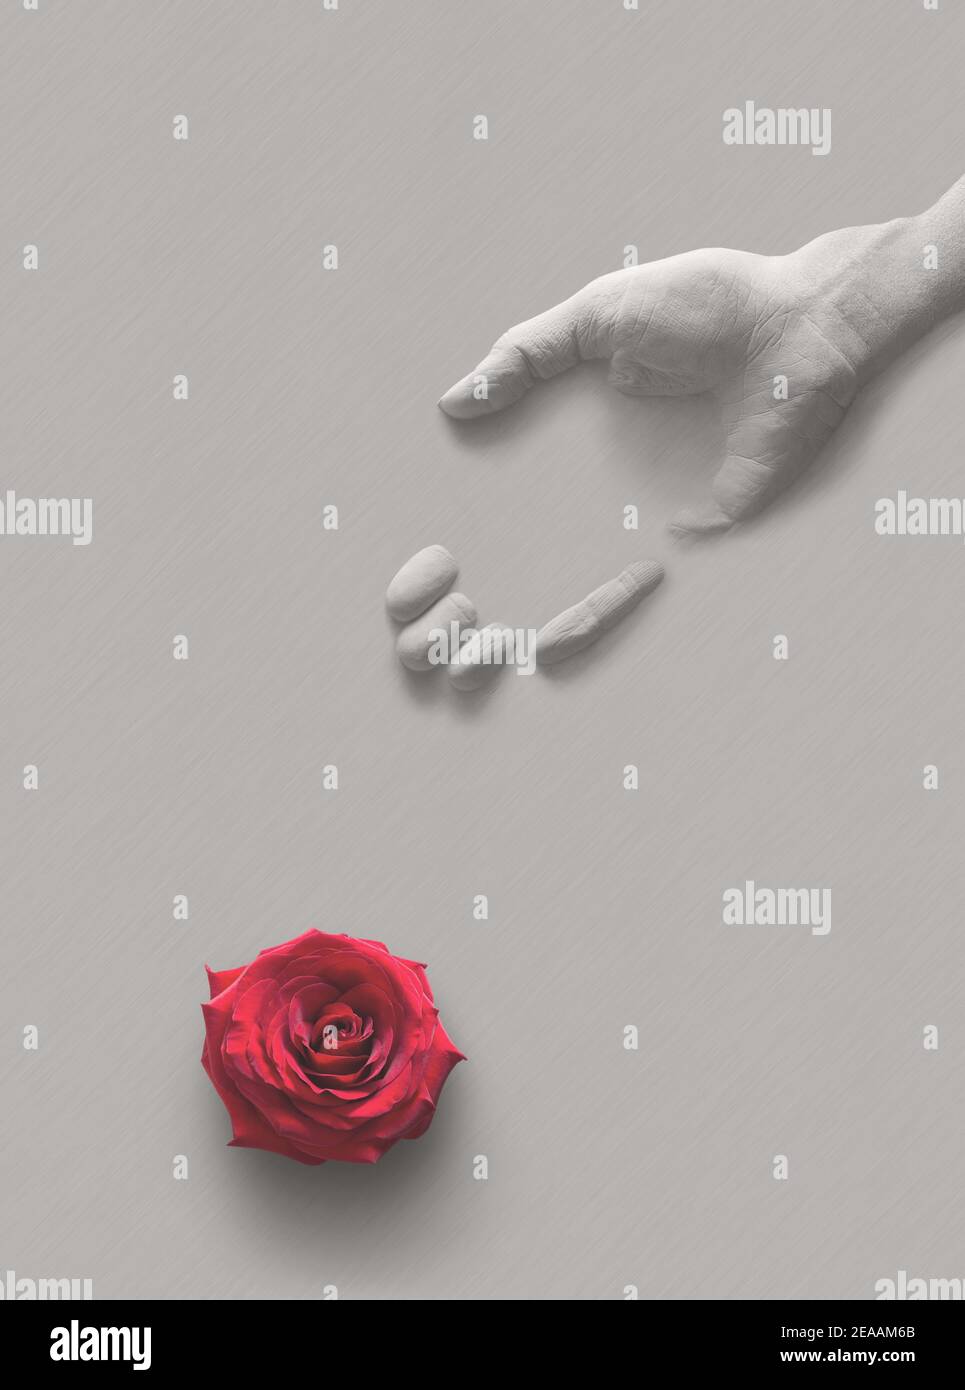 Palmier en gypse humain et fleur de rose rouge sur fond gris. Concept pour montrer que le temps de la jeunesse est court et que la mort viendra rapidement. E Banque D'Images